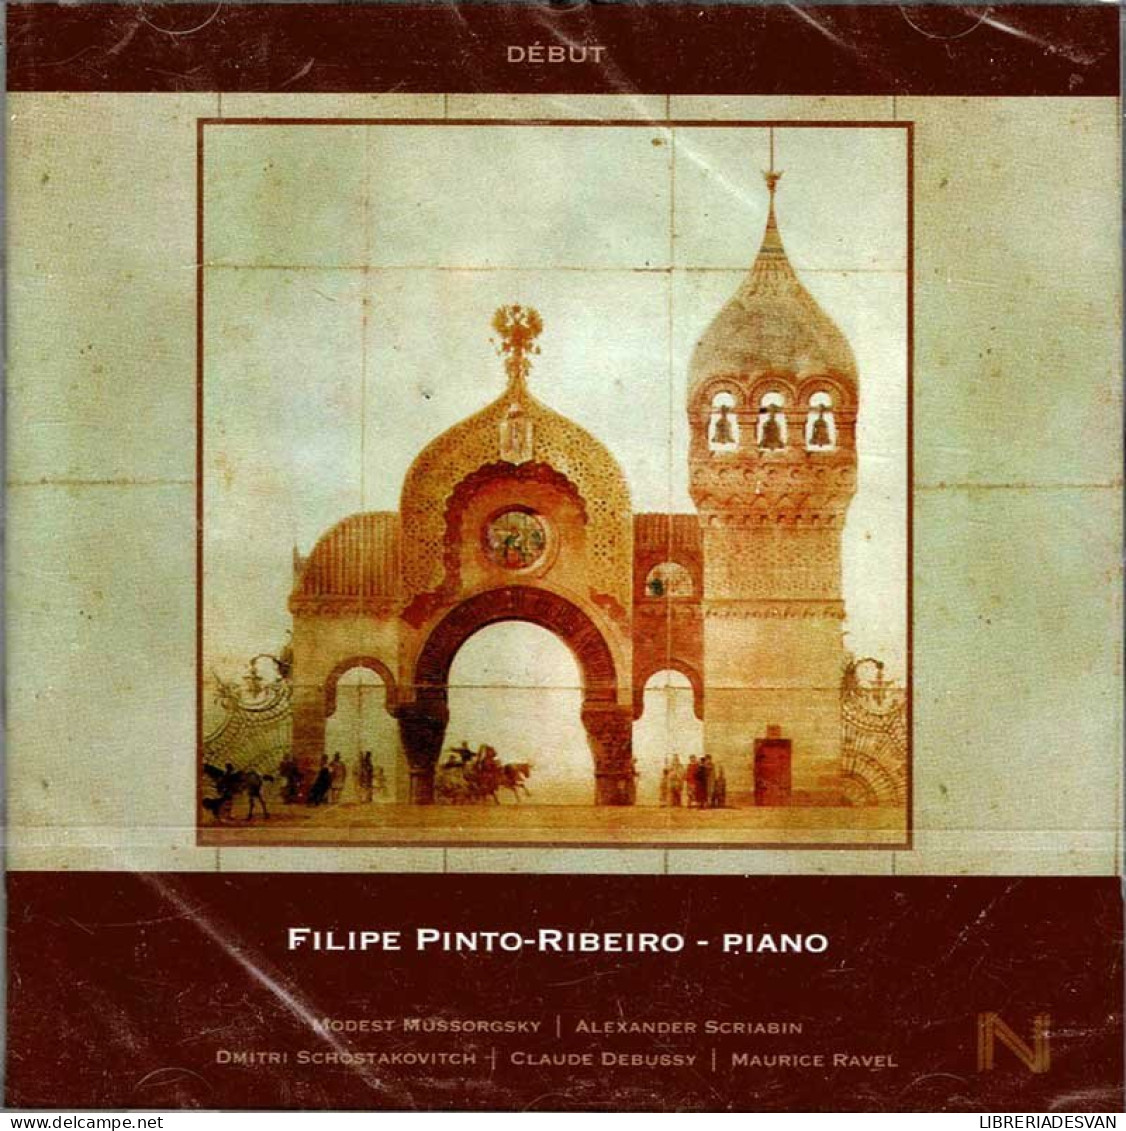 Filipe Pinto-Ribeiro - Début. CD - Classique